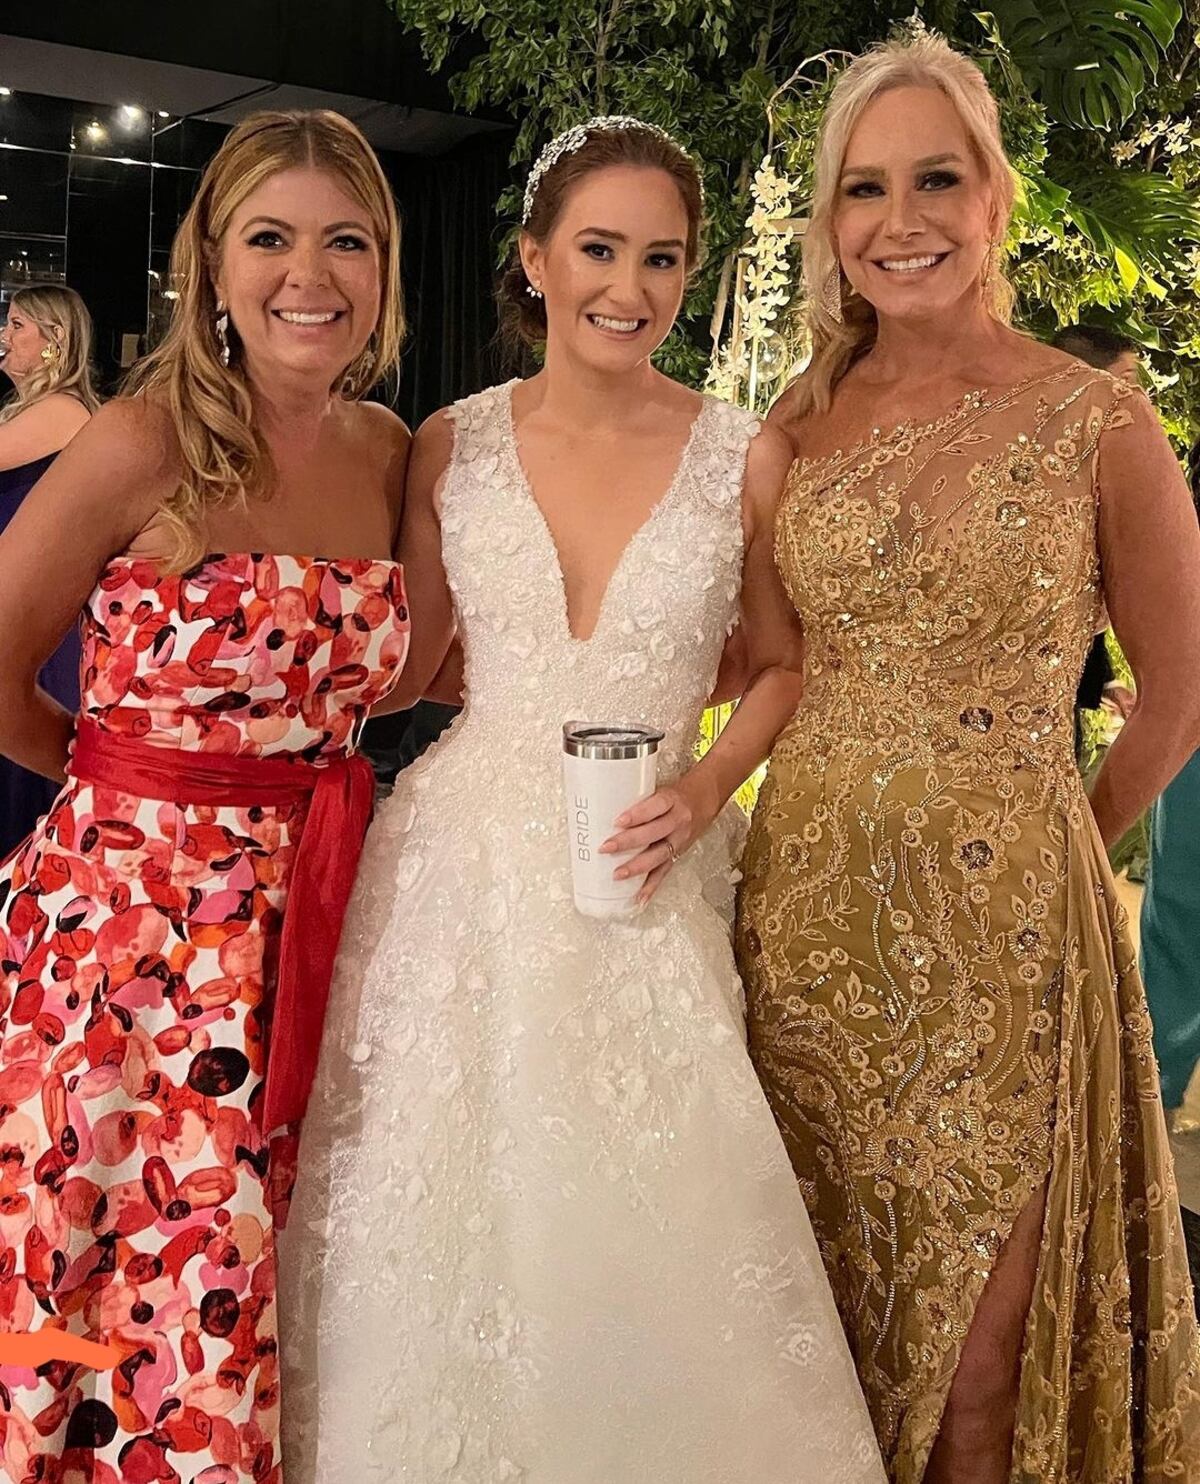 Fotos de la boda de la hija de la presentadora Karen Chalmers 